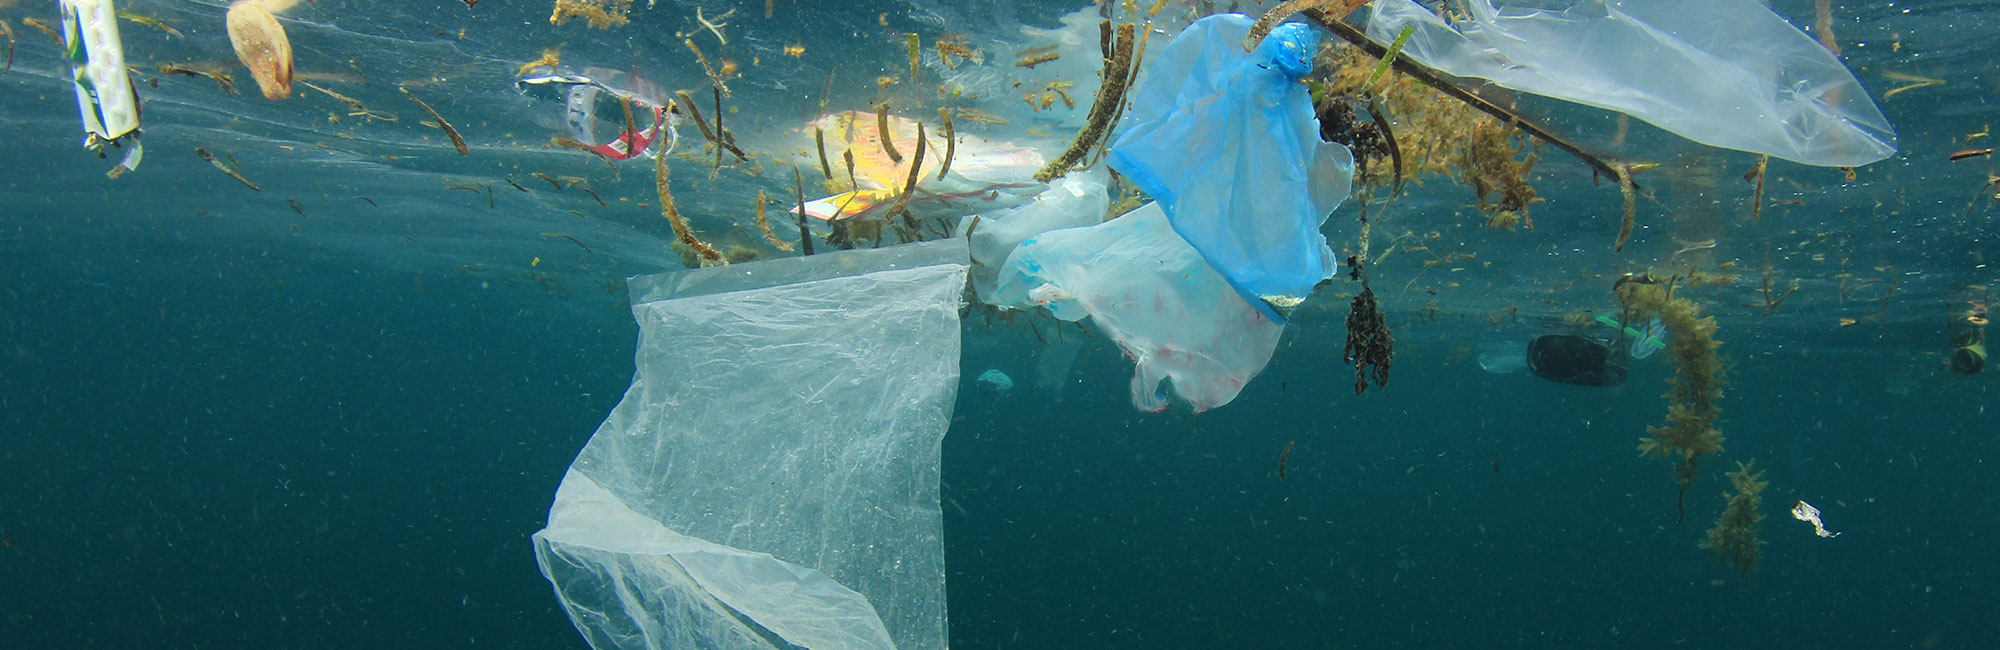 塑料在海洋中:他们为什么重要?